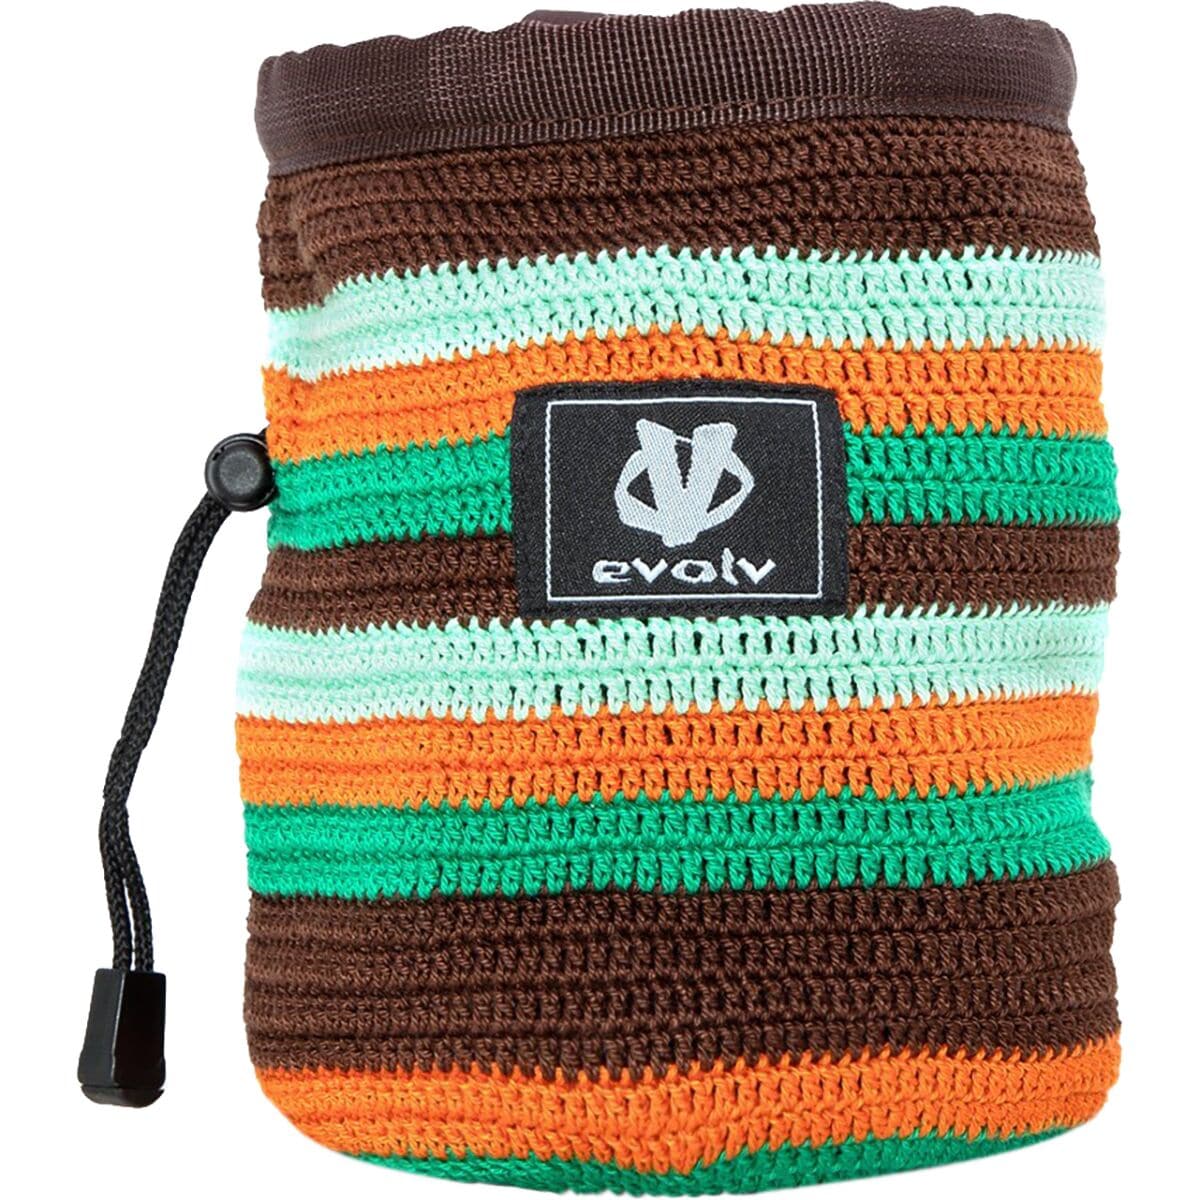 Evolv Knit Chalk Bag - ShopStyle Home & Living